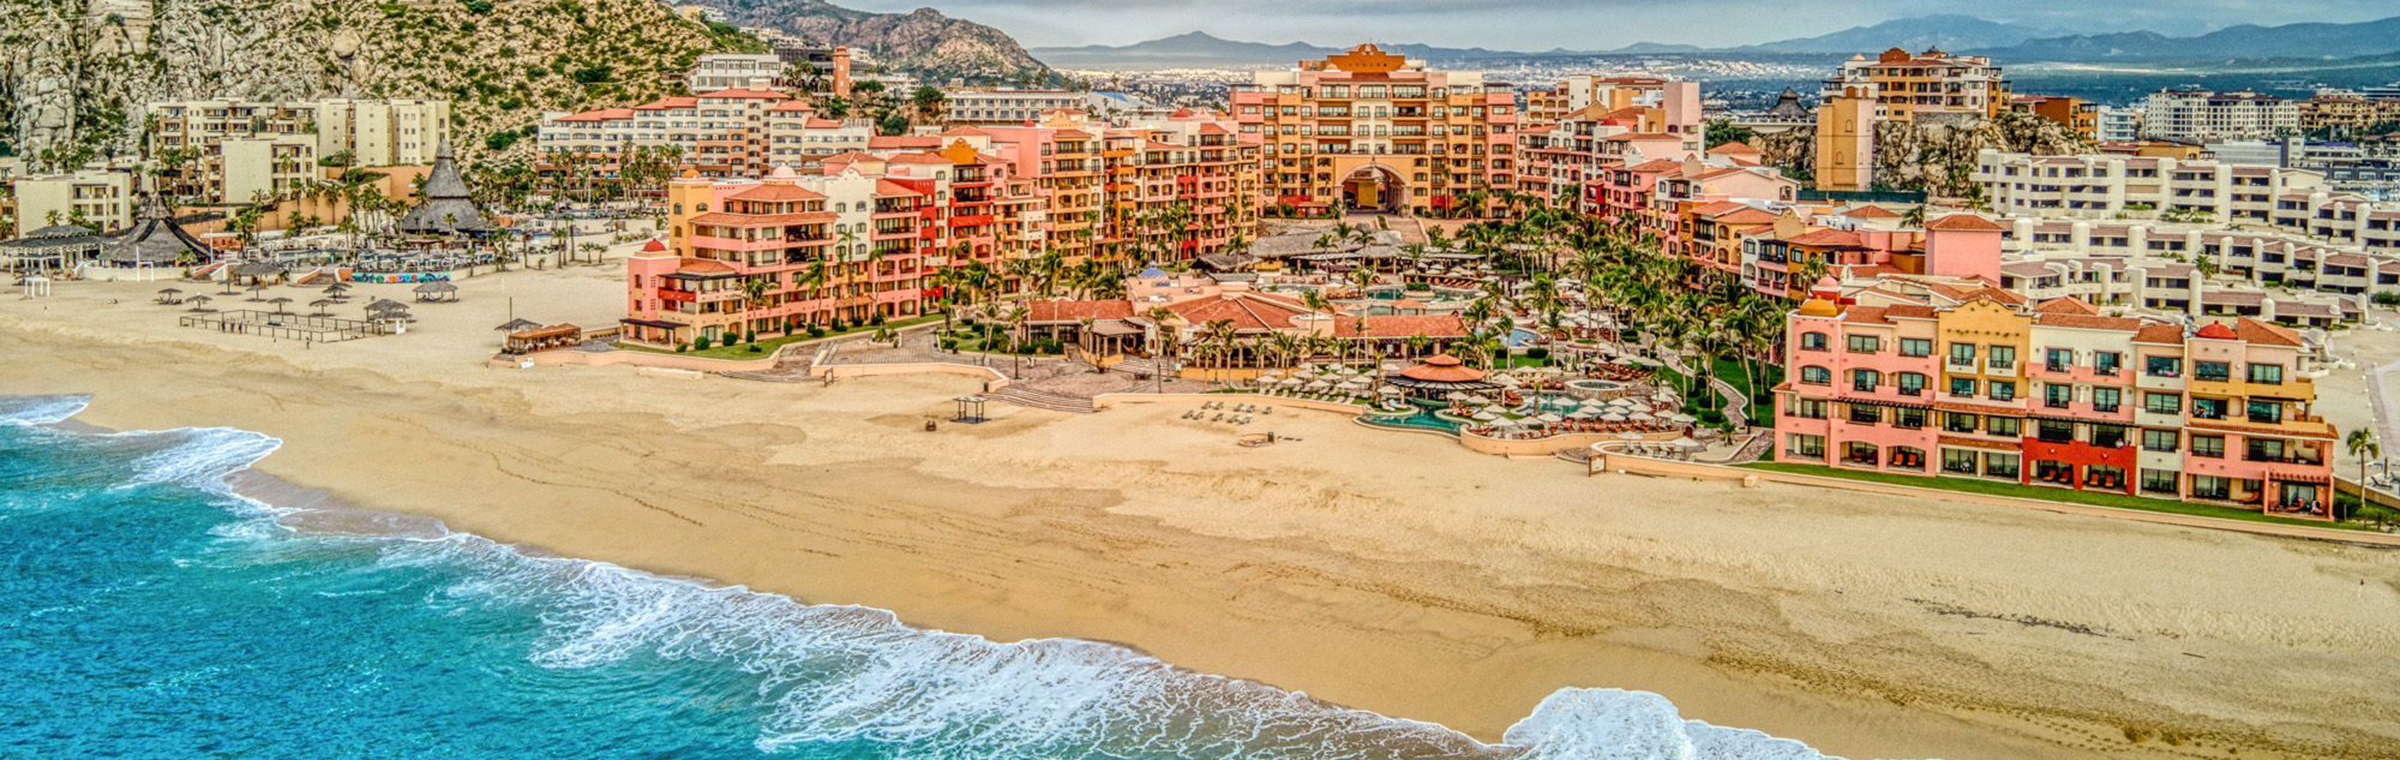 Hotel Playa Grande Resort & Spa Ocean View